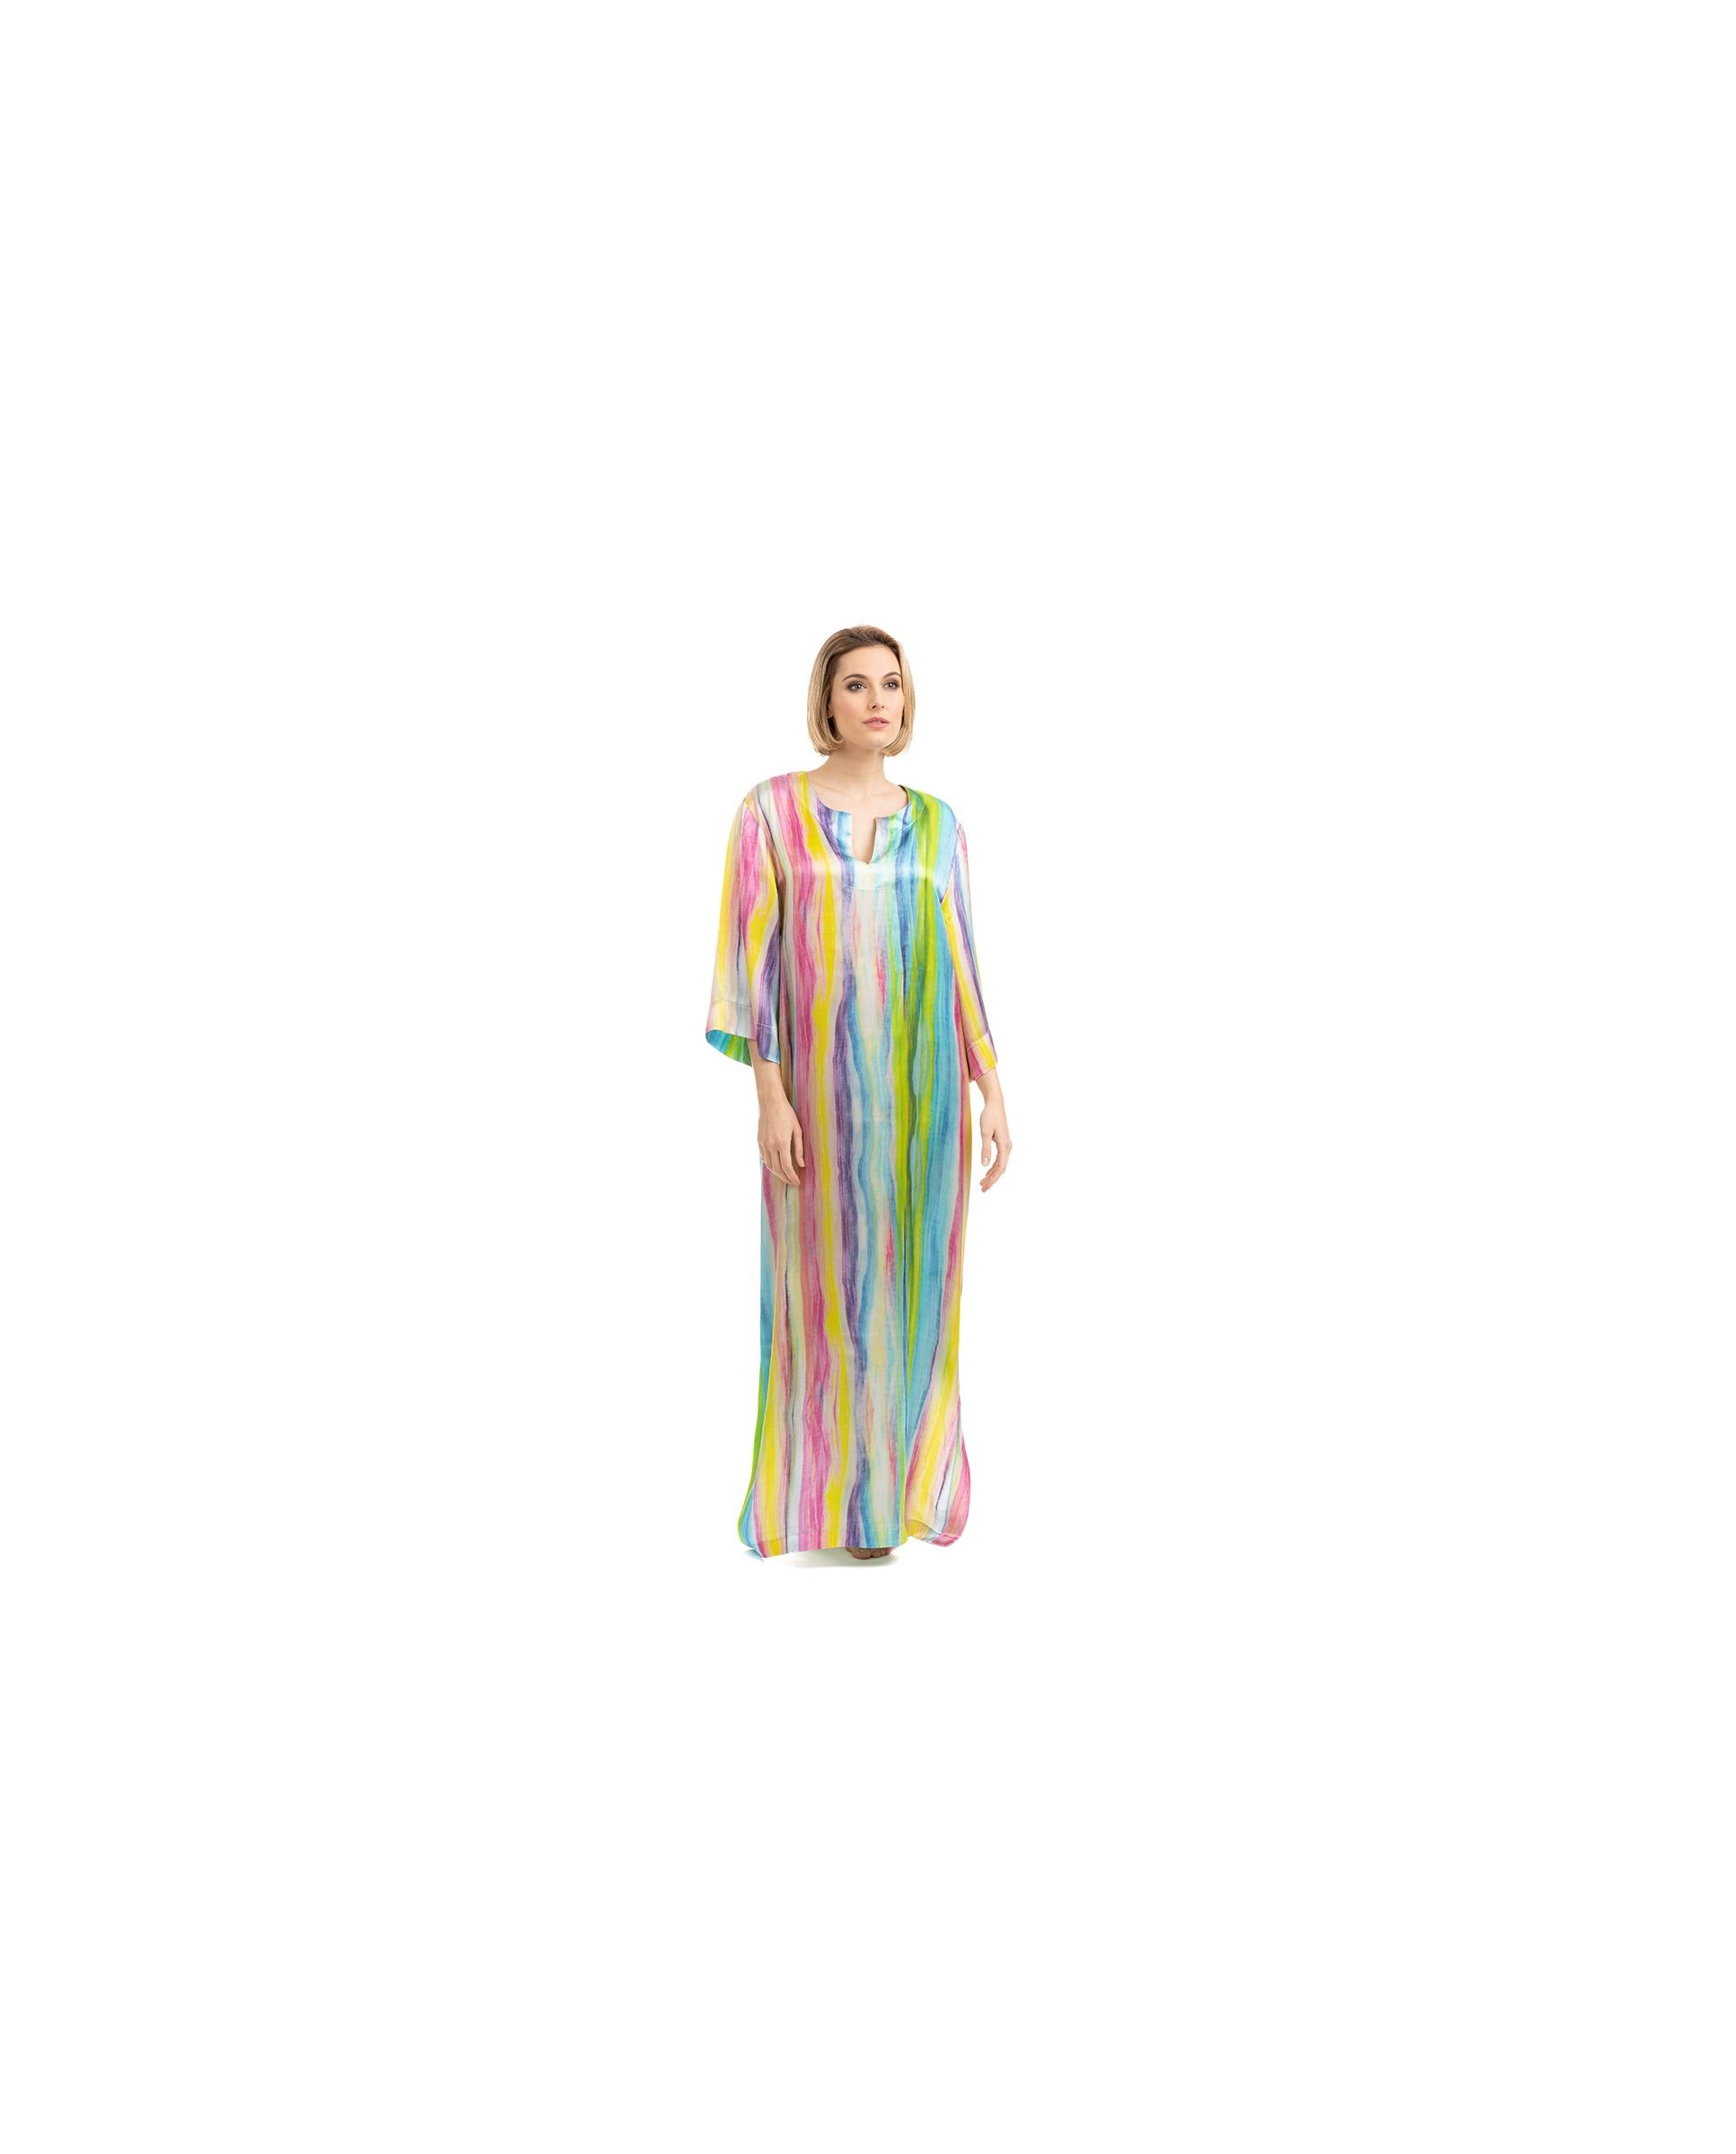 Mujer posa con kaftan de seda largo con aberturas laterales y escote redondo, trazos multicolor